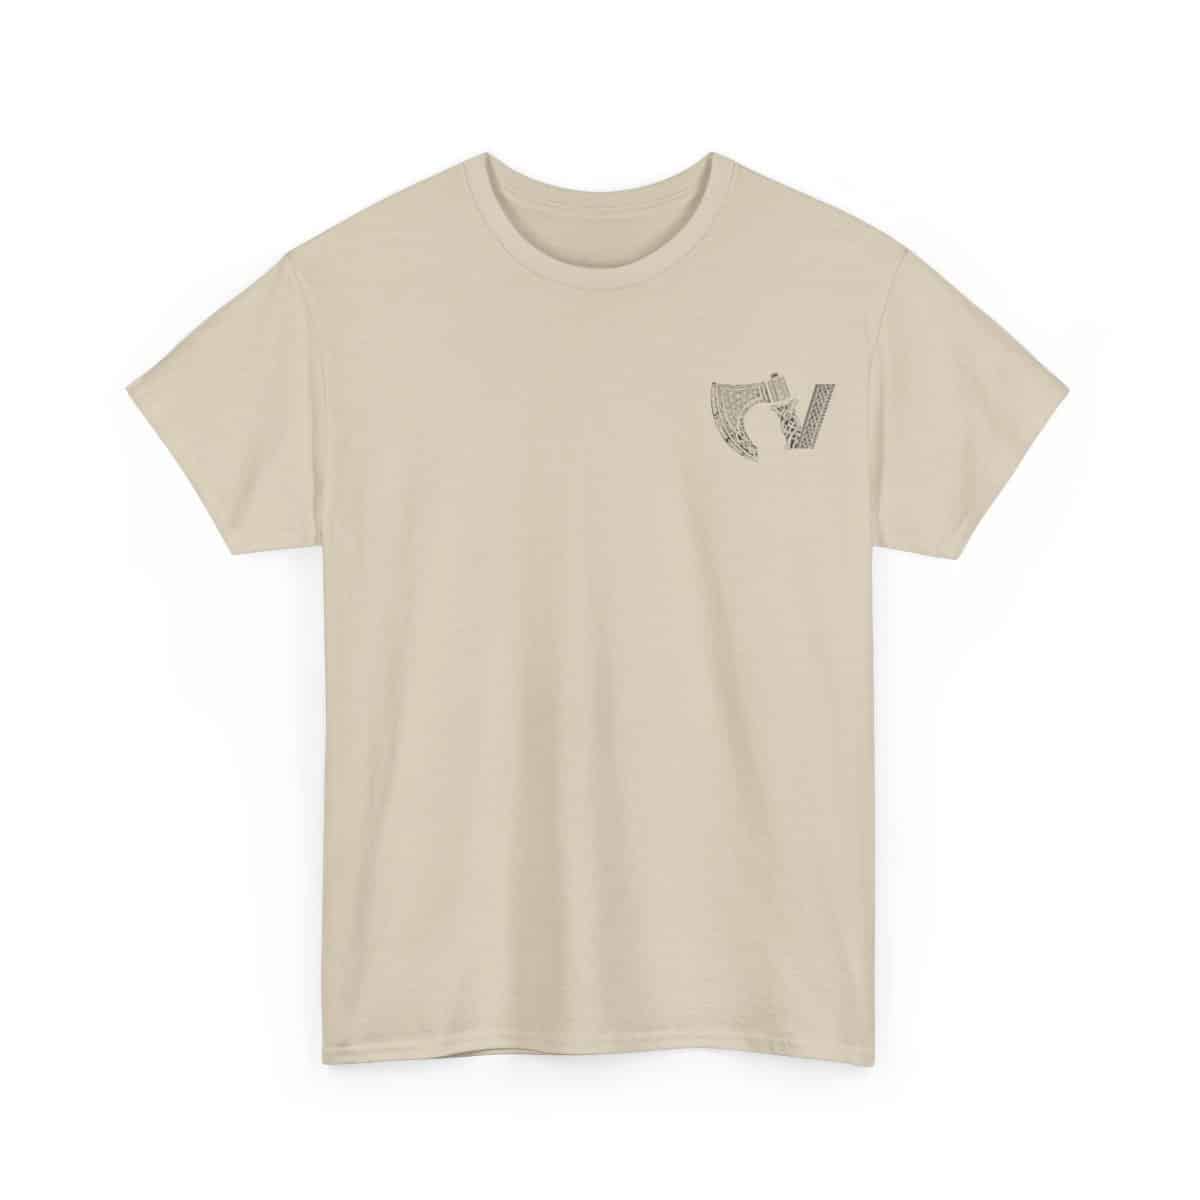 Víkingr Classic – Light Colors T-Shirt